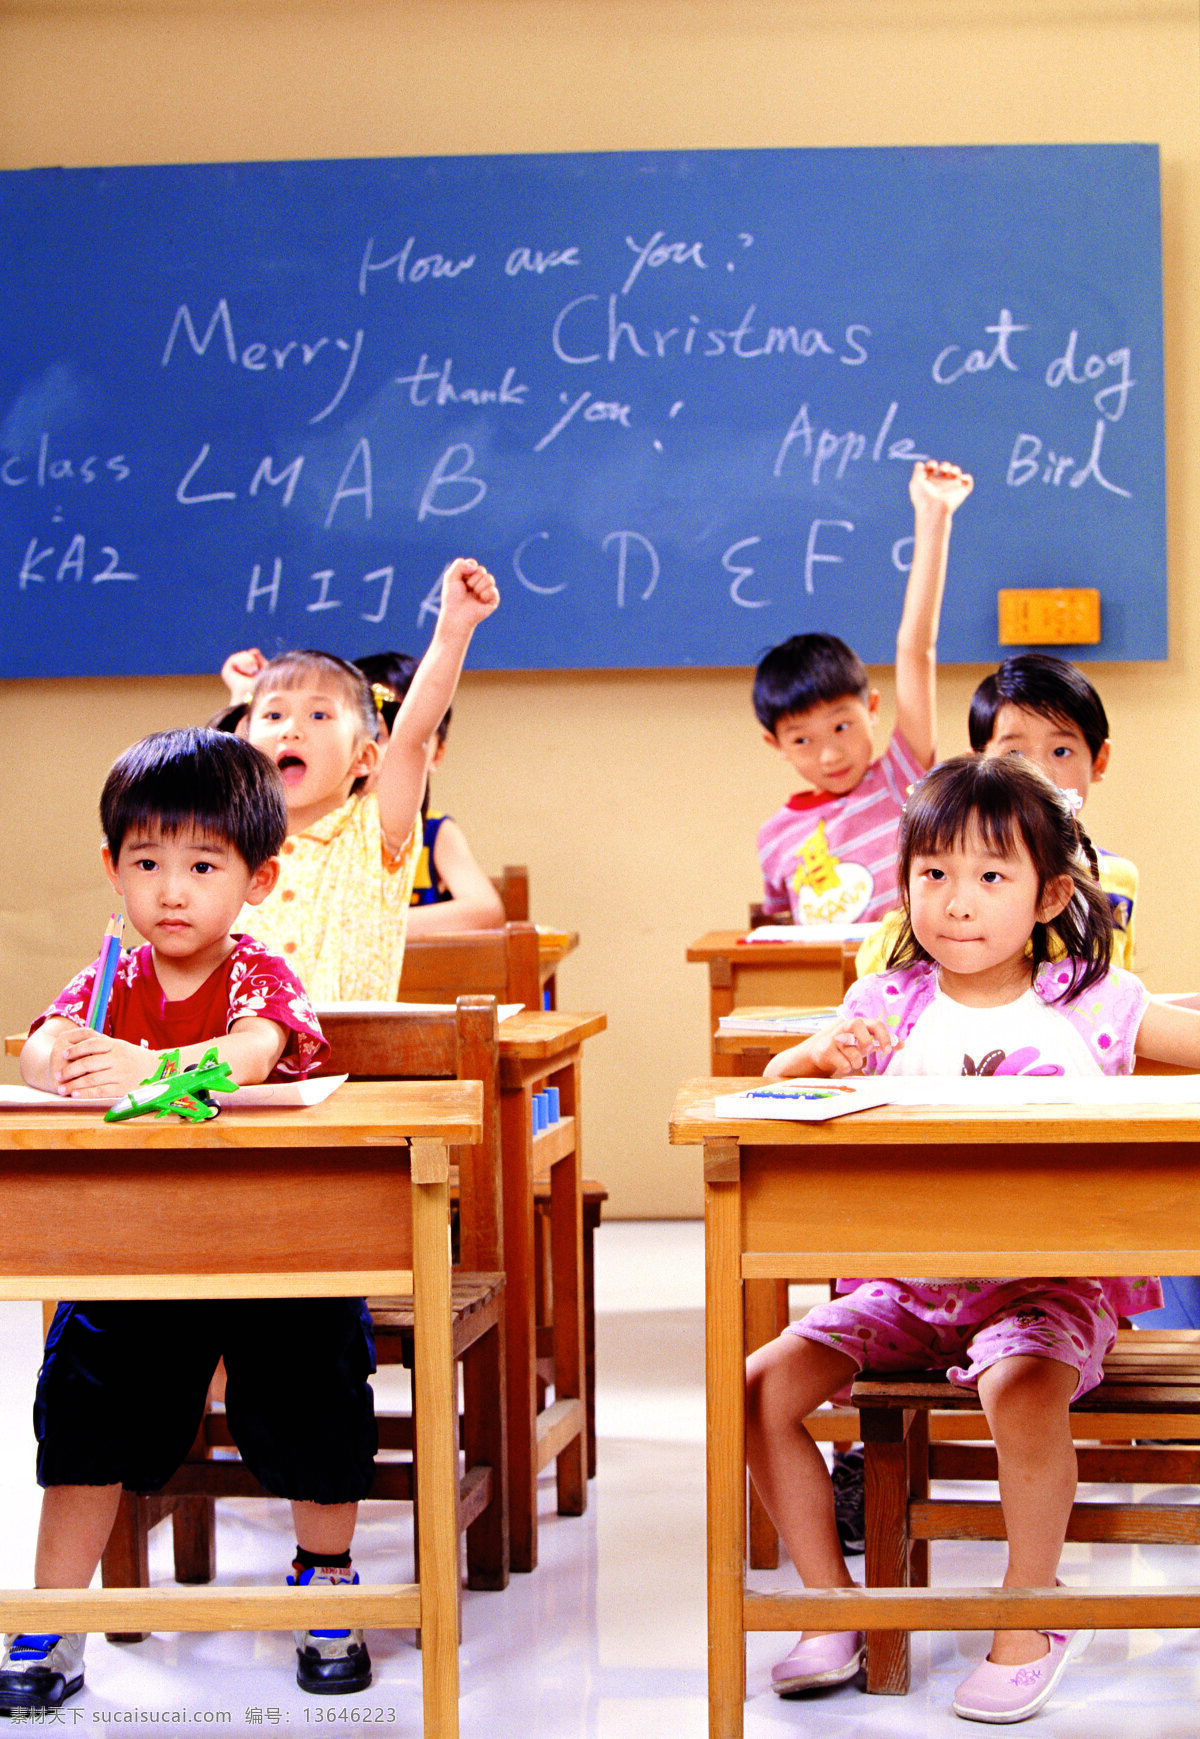 学生课堂 黑板 墙面 女孩 男孩 桌椅 地砖 铅笔 玩具 活泼 人物图库 儿童幼儿 摄影图库